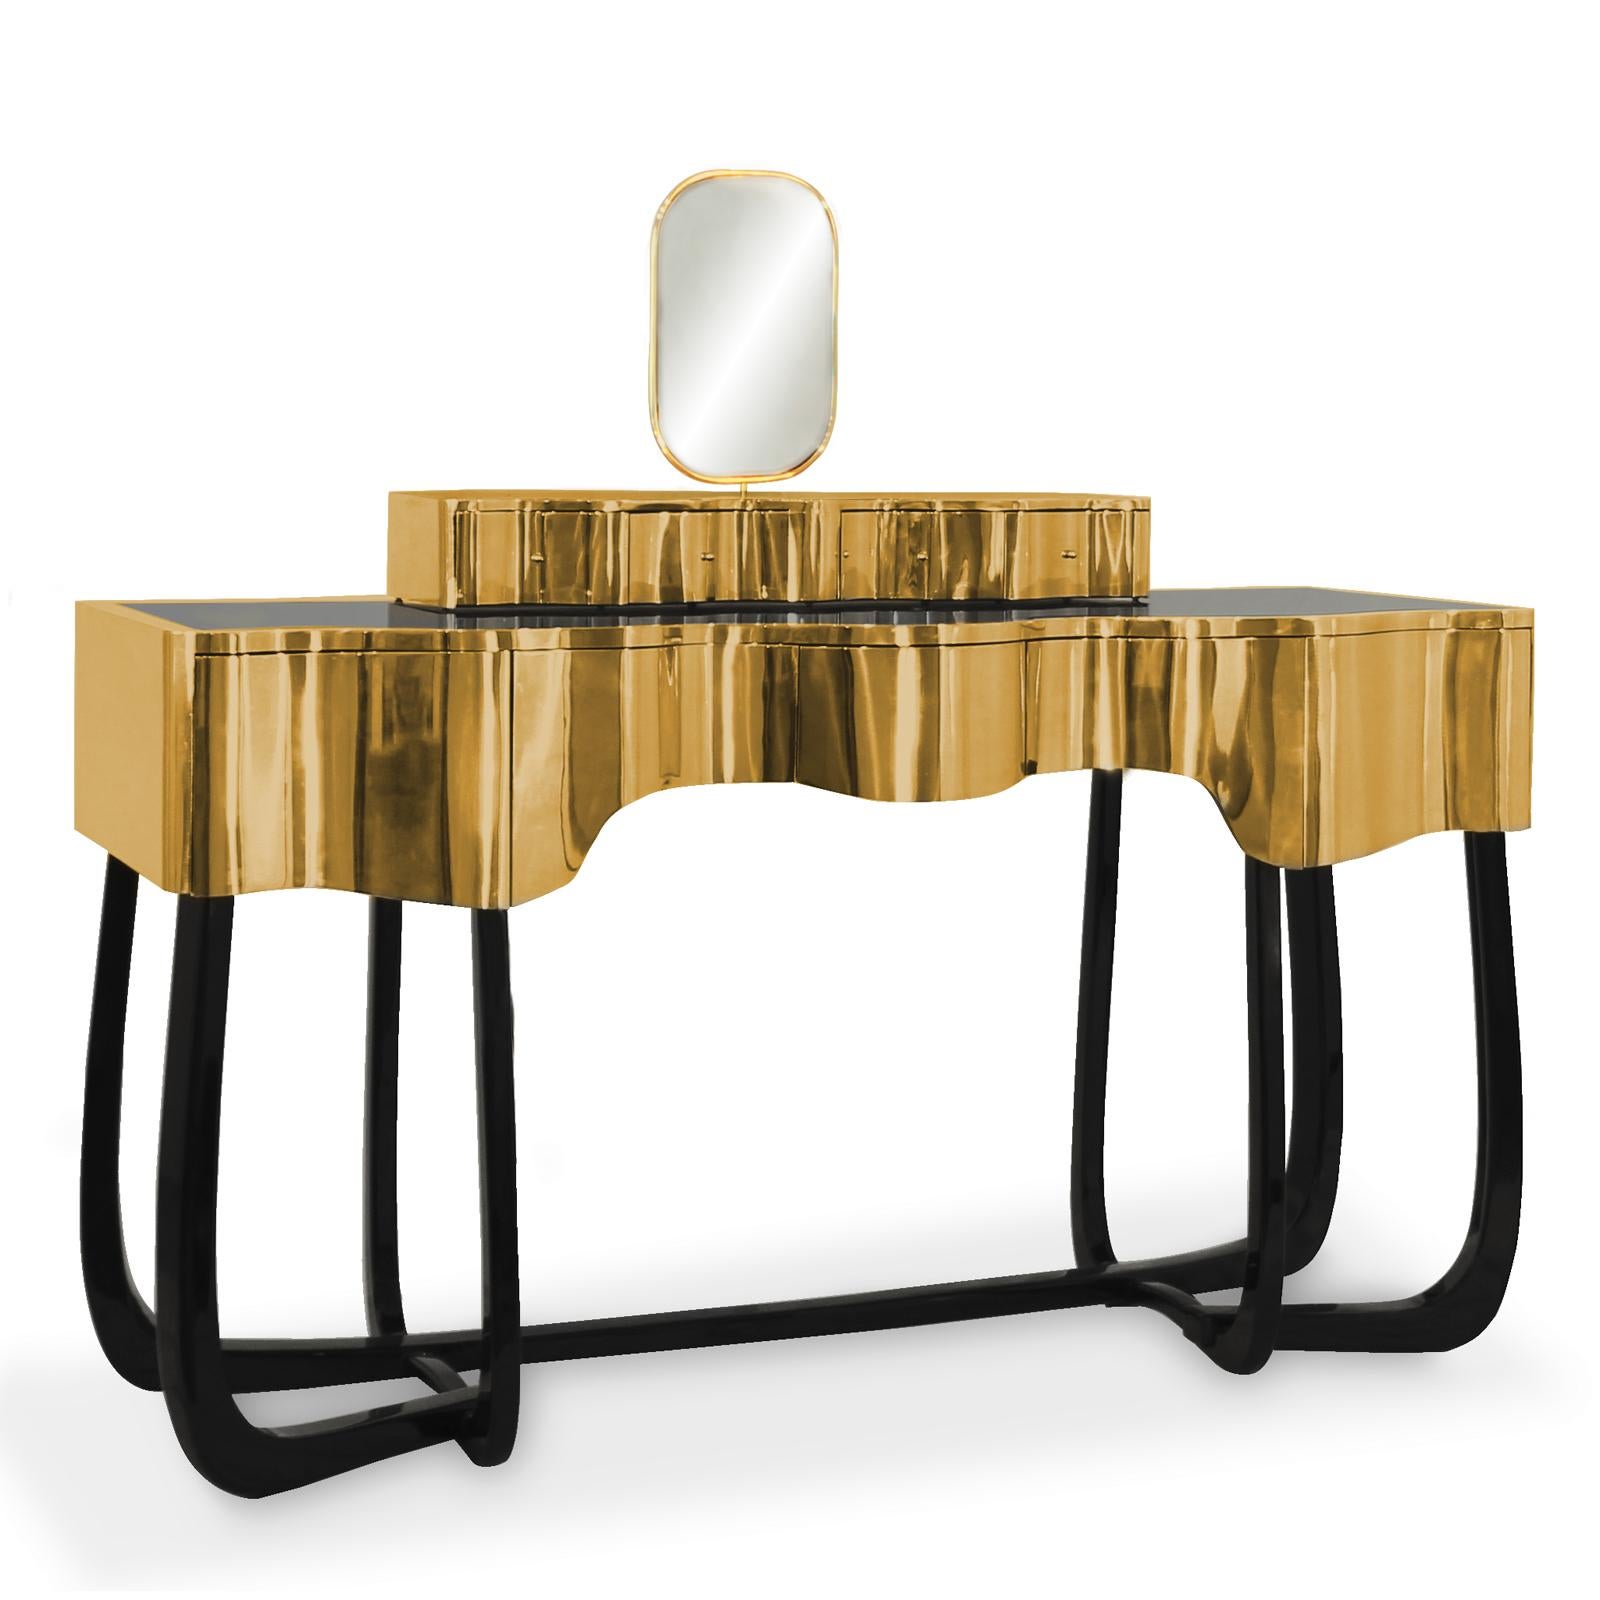 Table console pièce miroir curvy avec structure en bois et
revêtu de laiton massif poli avec un vernis brillant. Avec
4 tiroirs sur le dessus et 5 tiroirs sous le dessus. Avec
1 miroir dont le pourtour est plaqué or. Avec laque noire
base en